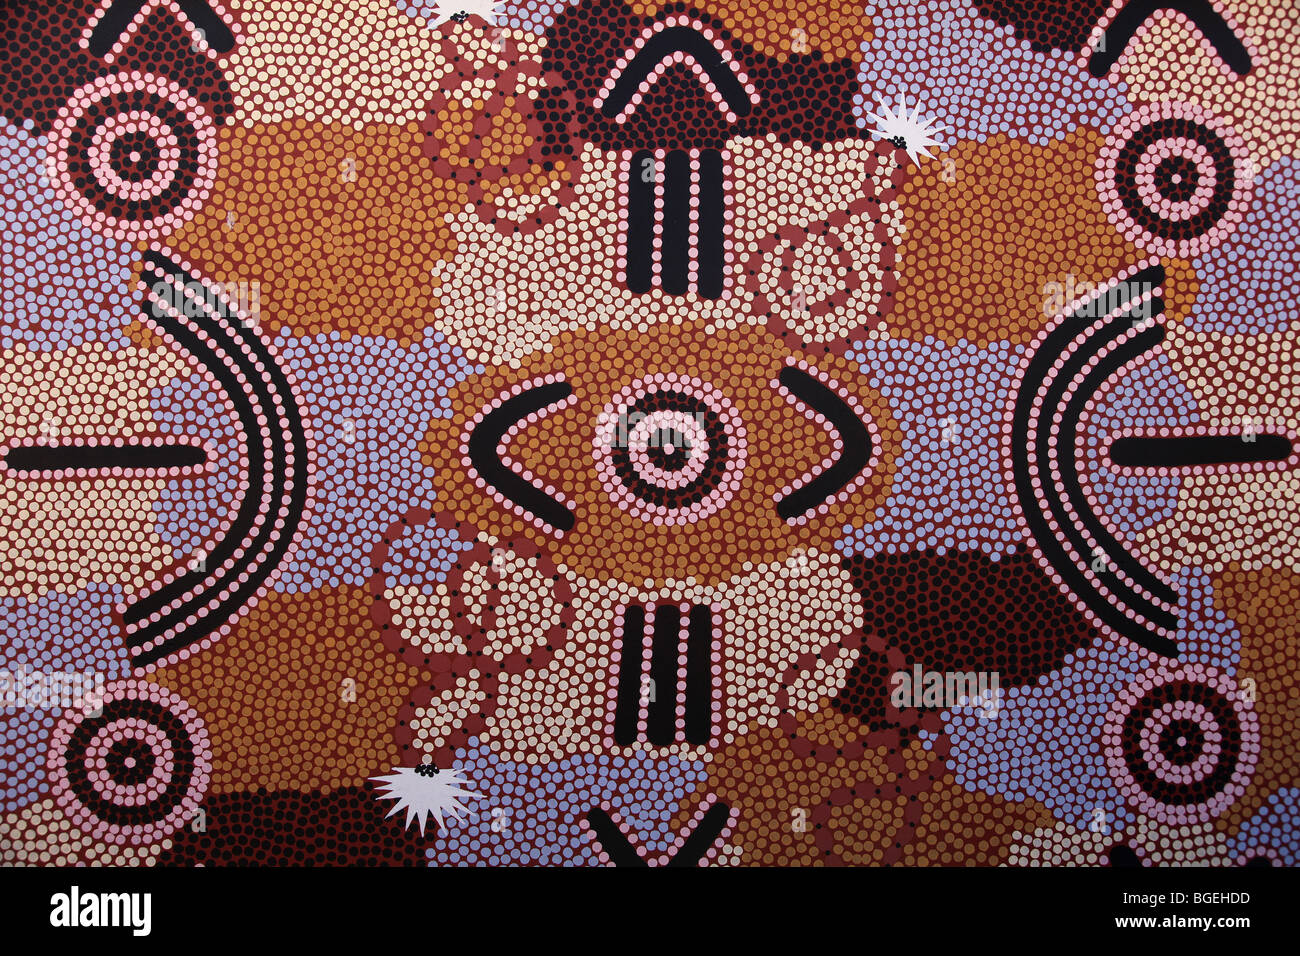 Araluen Arts Centre, Alice Springs, NT Australie Banque D'Images